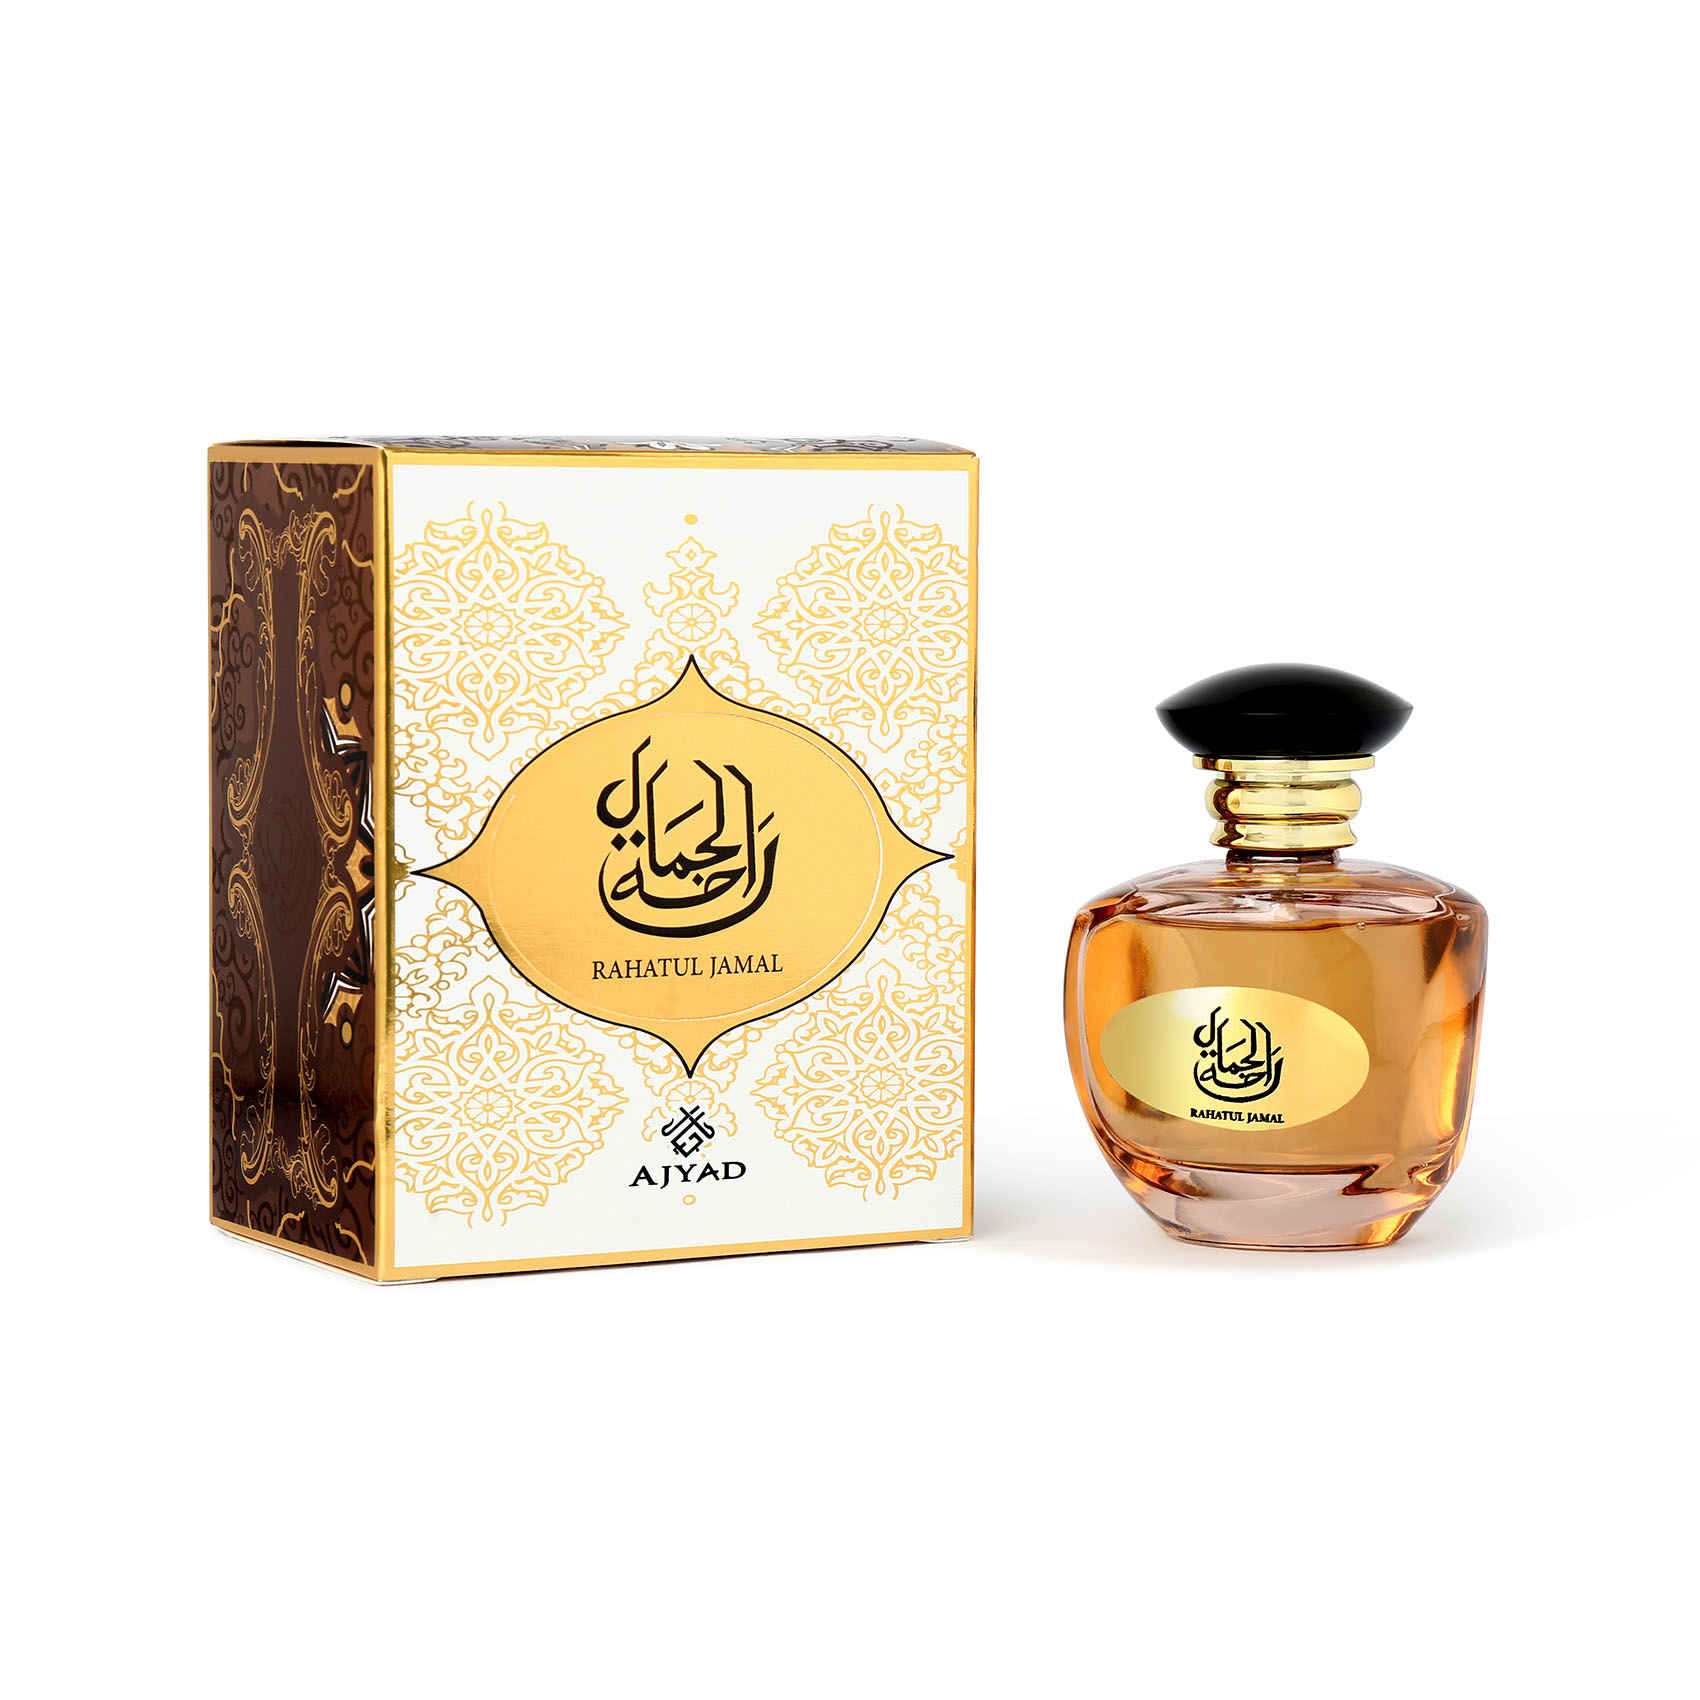 Rahatul Jamal Edp 100 ml Perfume For Women  Ajyad By Anfar 